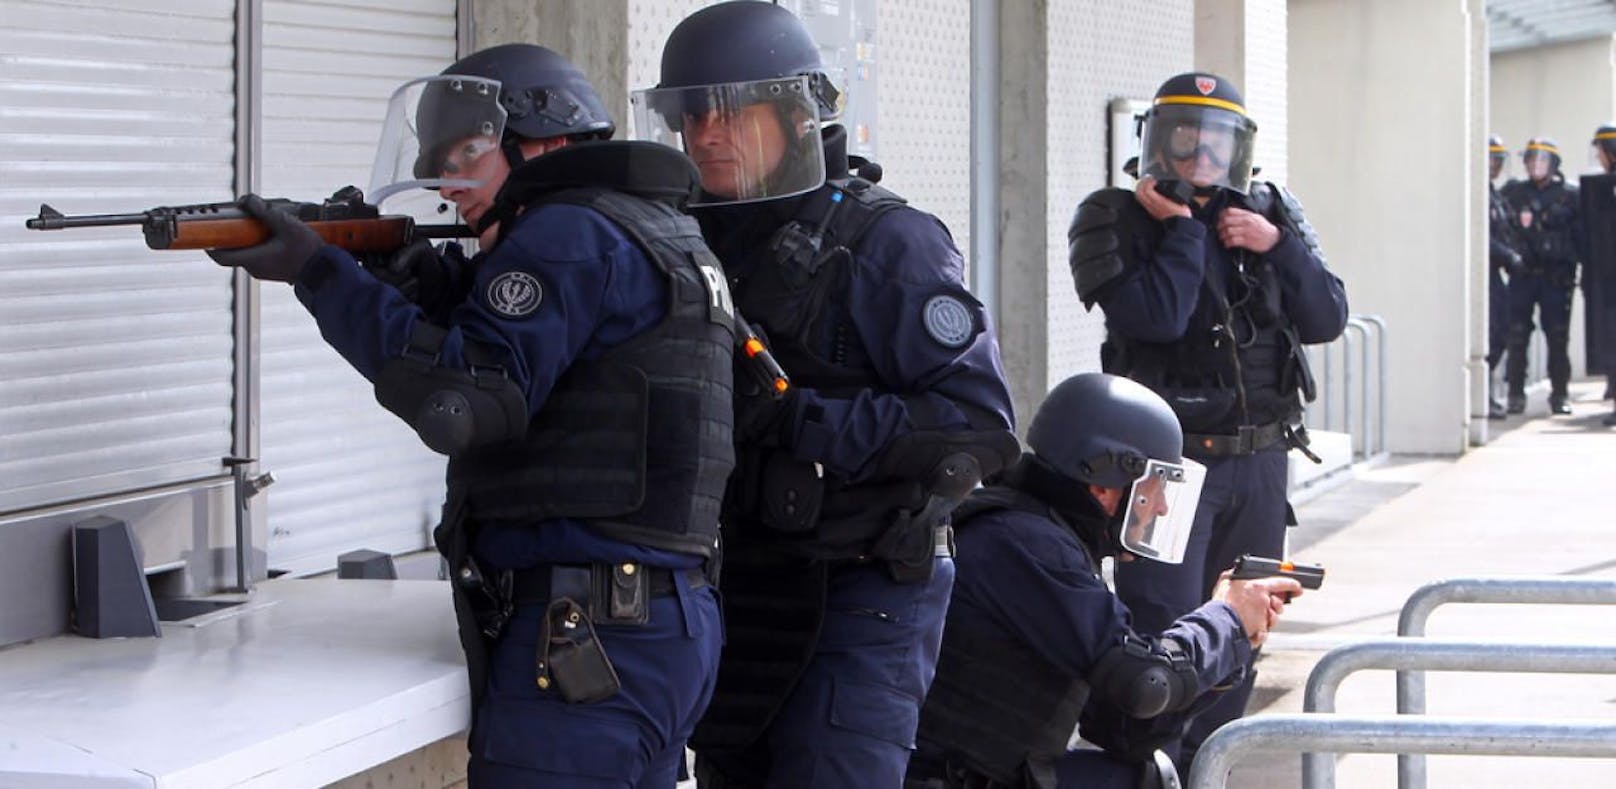 Terrorpläne: 2 Festnahmen vor Frankreich-Wahl